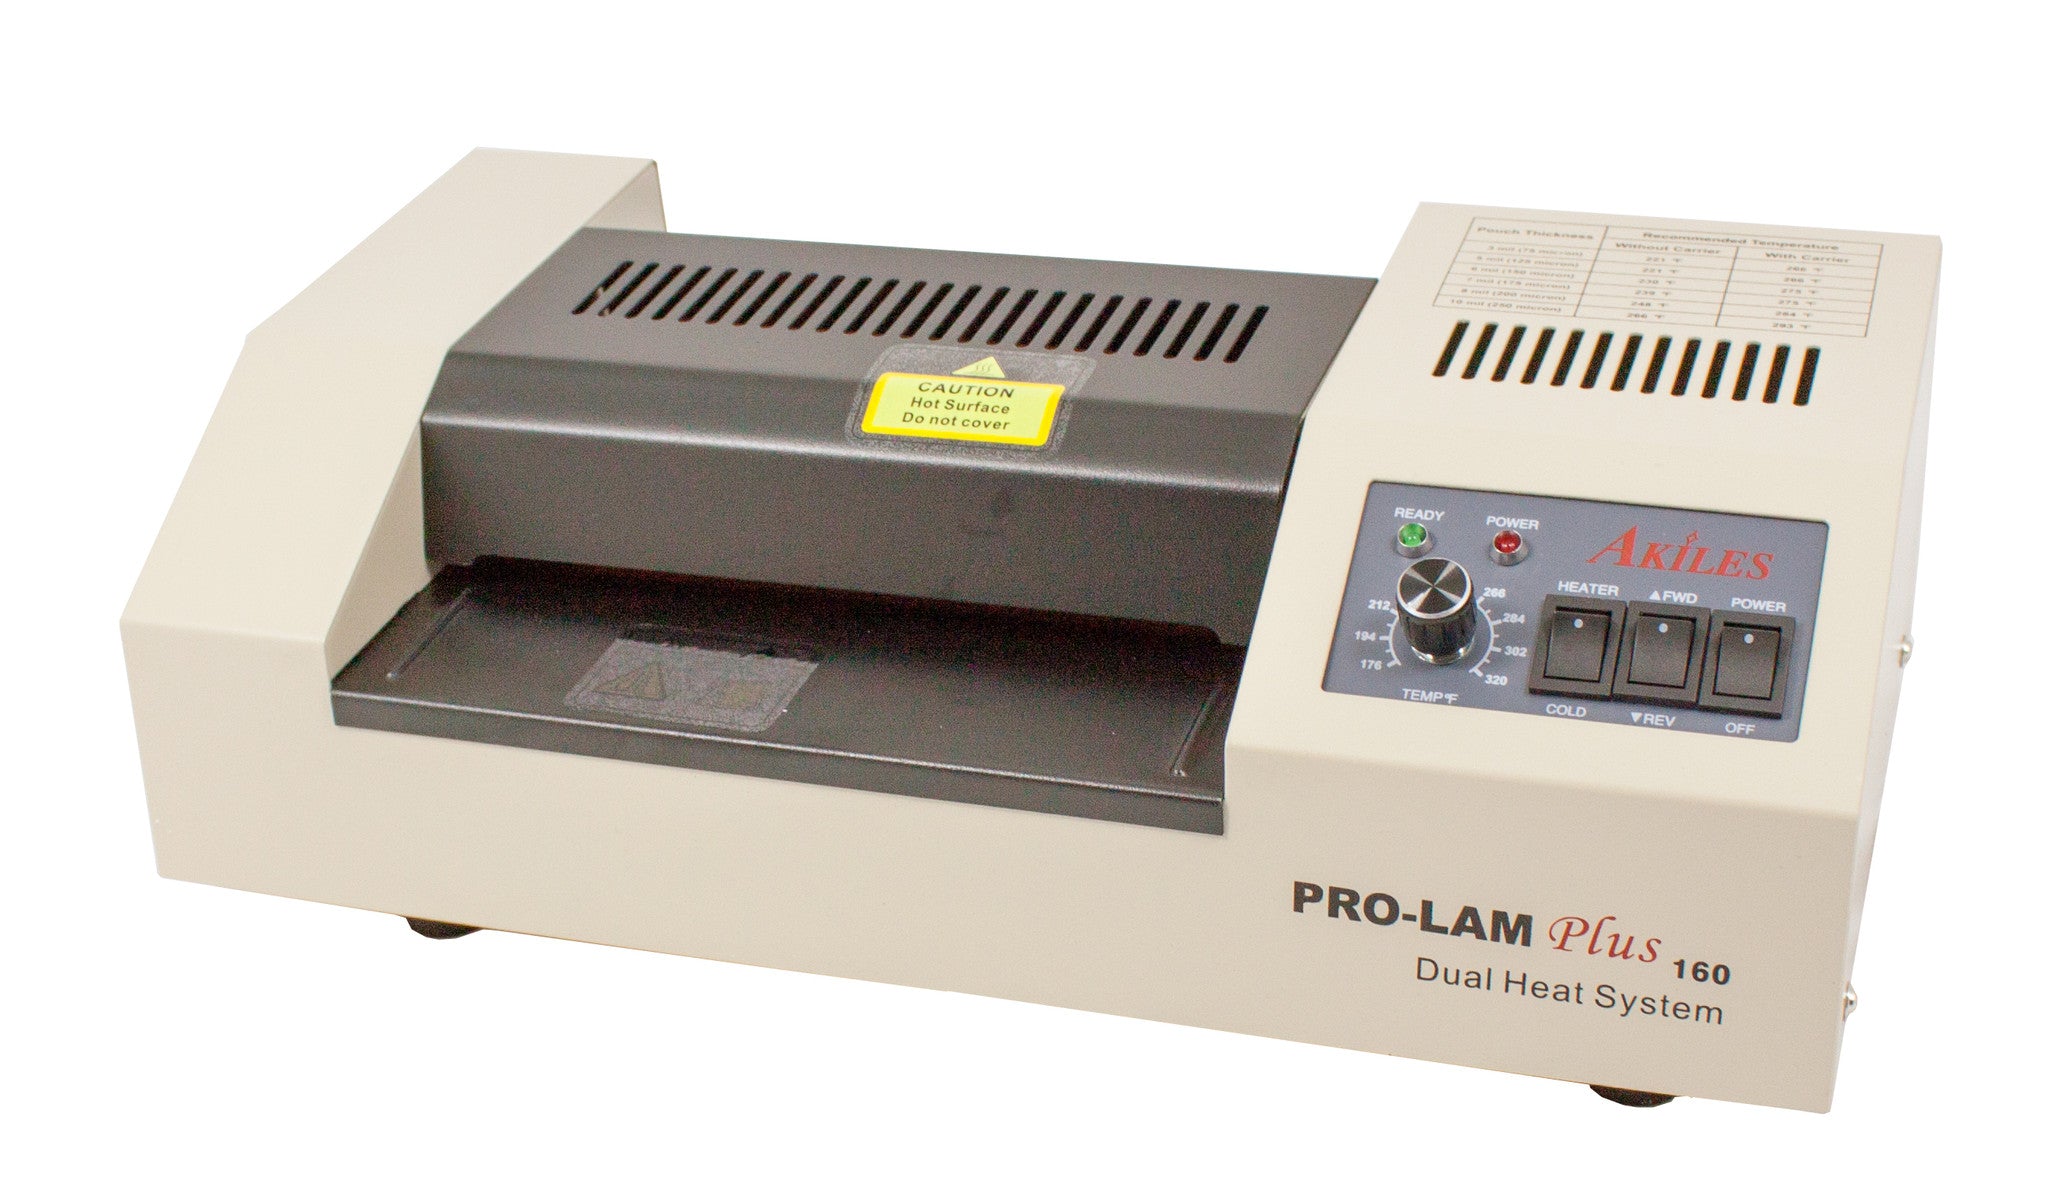 PROLAM Soft Touch – Seu Impresso com toque aveludado - Prolam